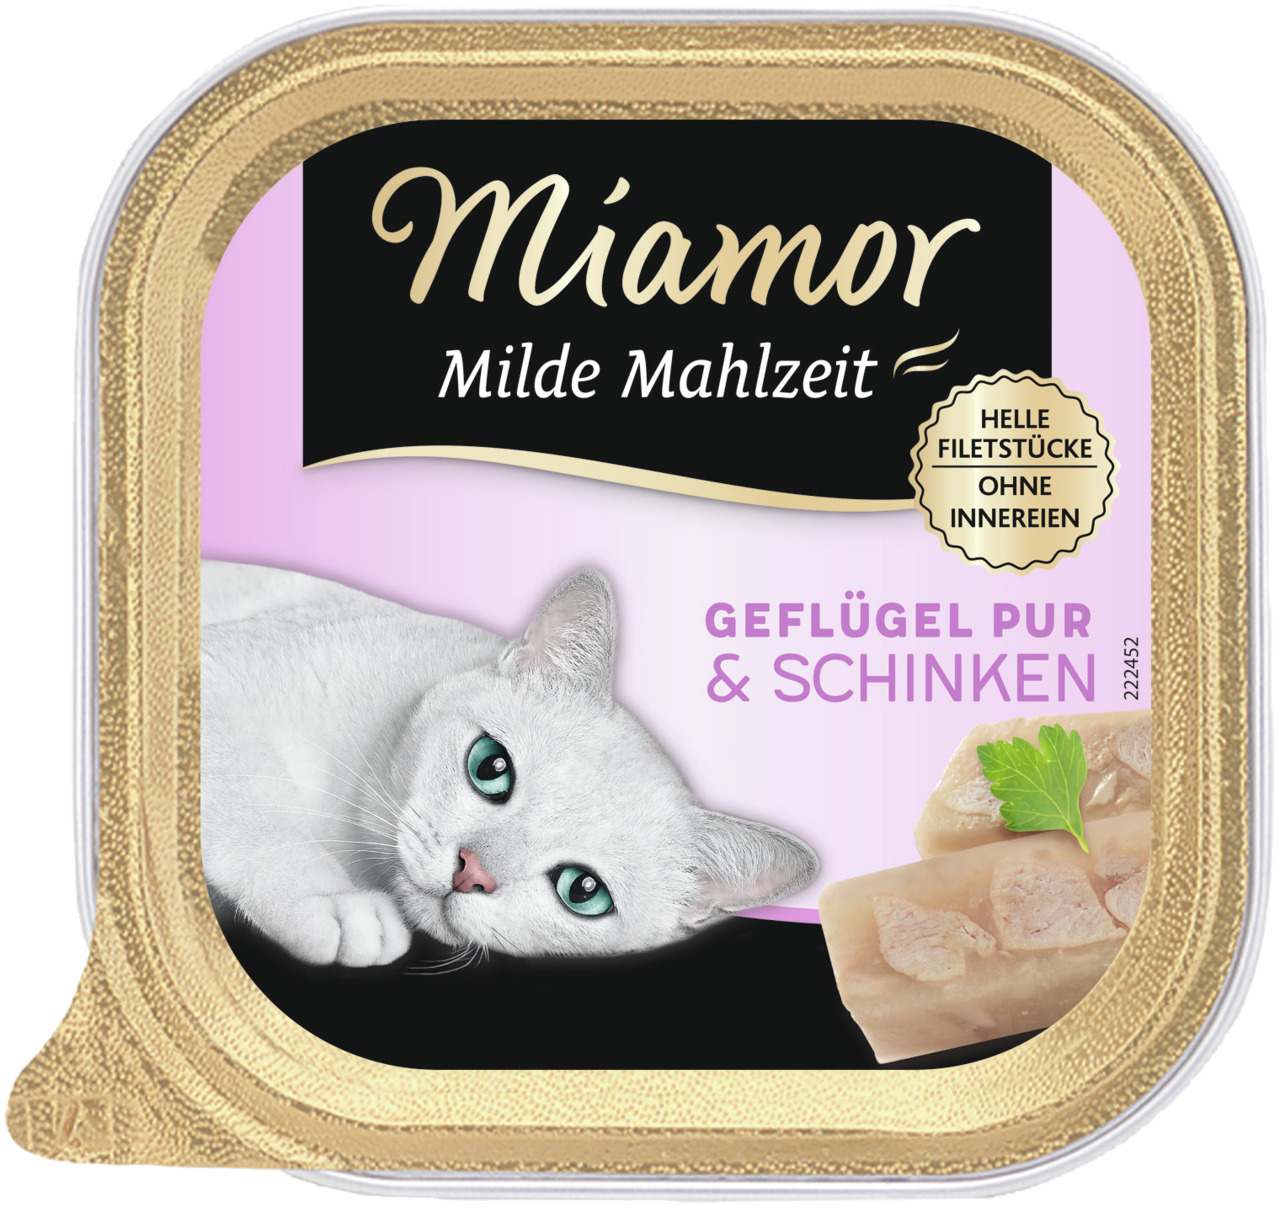 Sparpaket 32 x 100 g Miamor Milde Mahlzeit Geflügel pur & Schinken Katzen Nassfutter